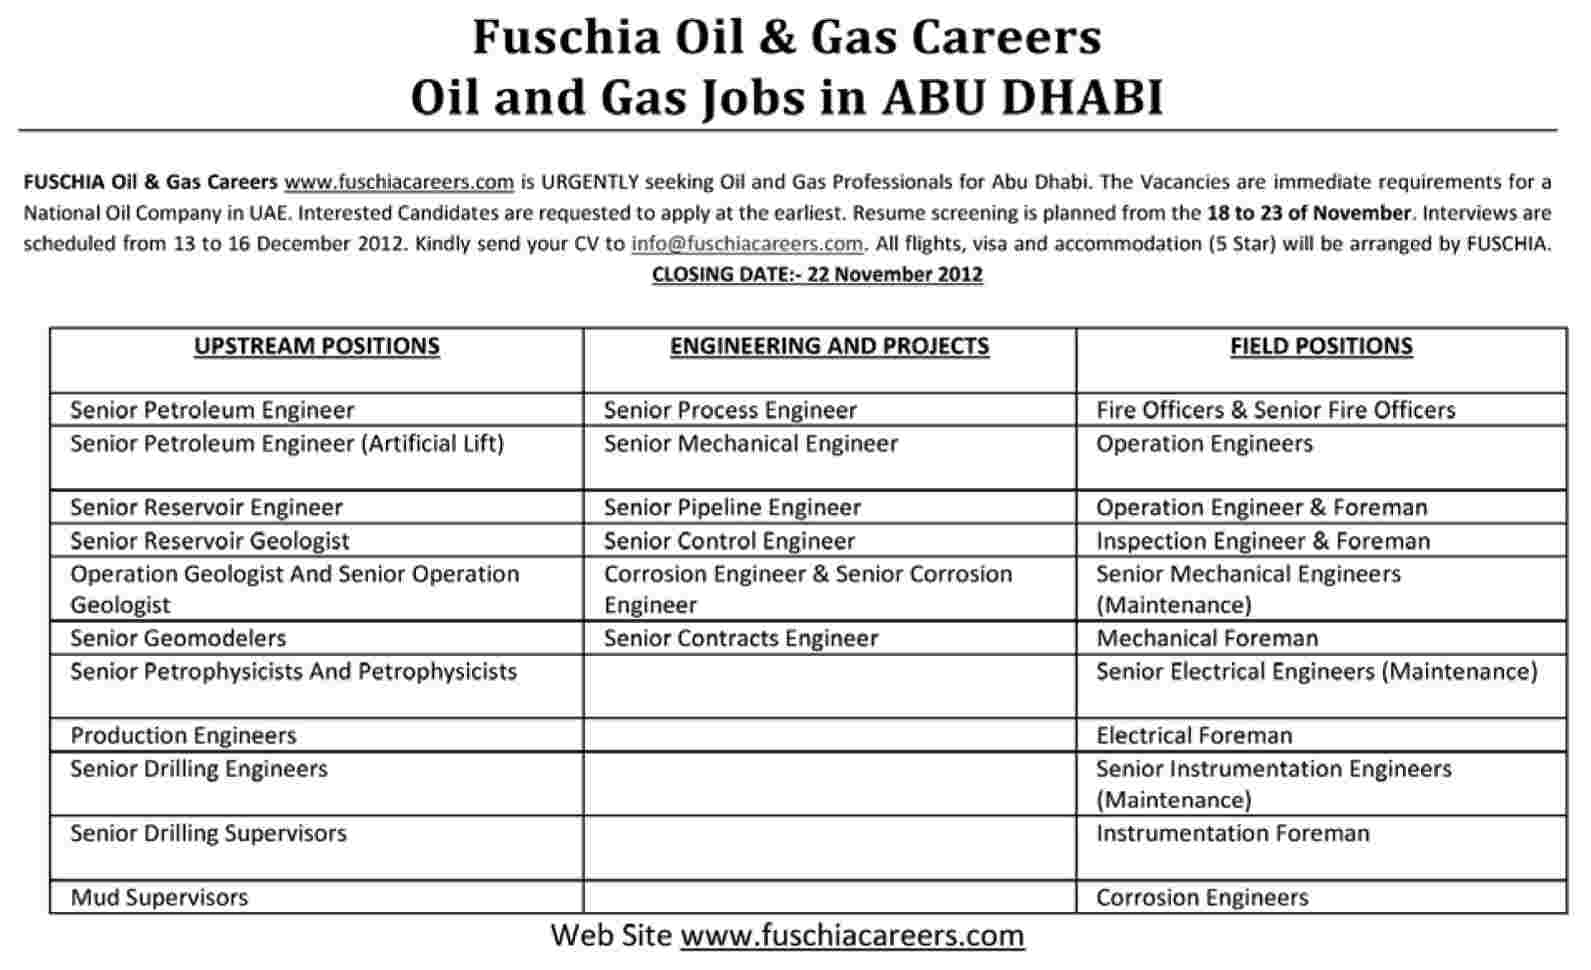 Fuschia Oil & Gas Requires Professionals for Abu Dhabi, UAE